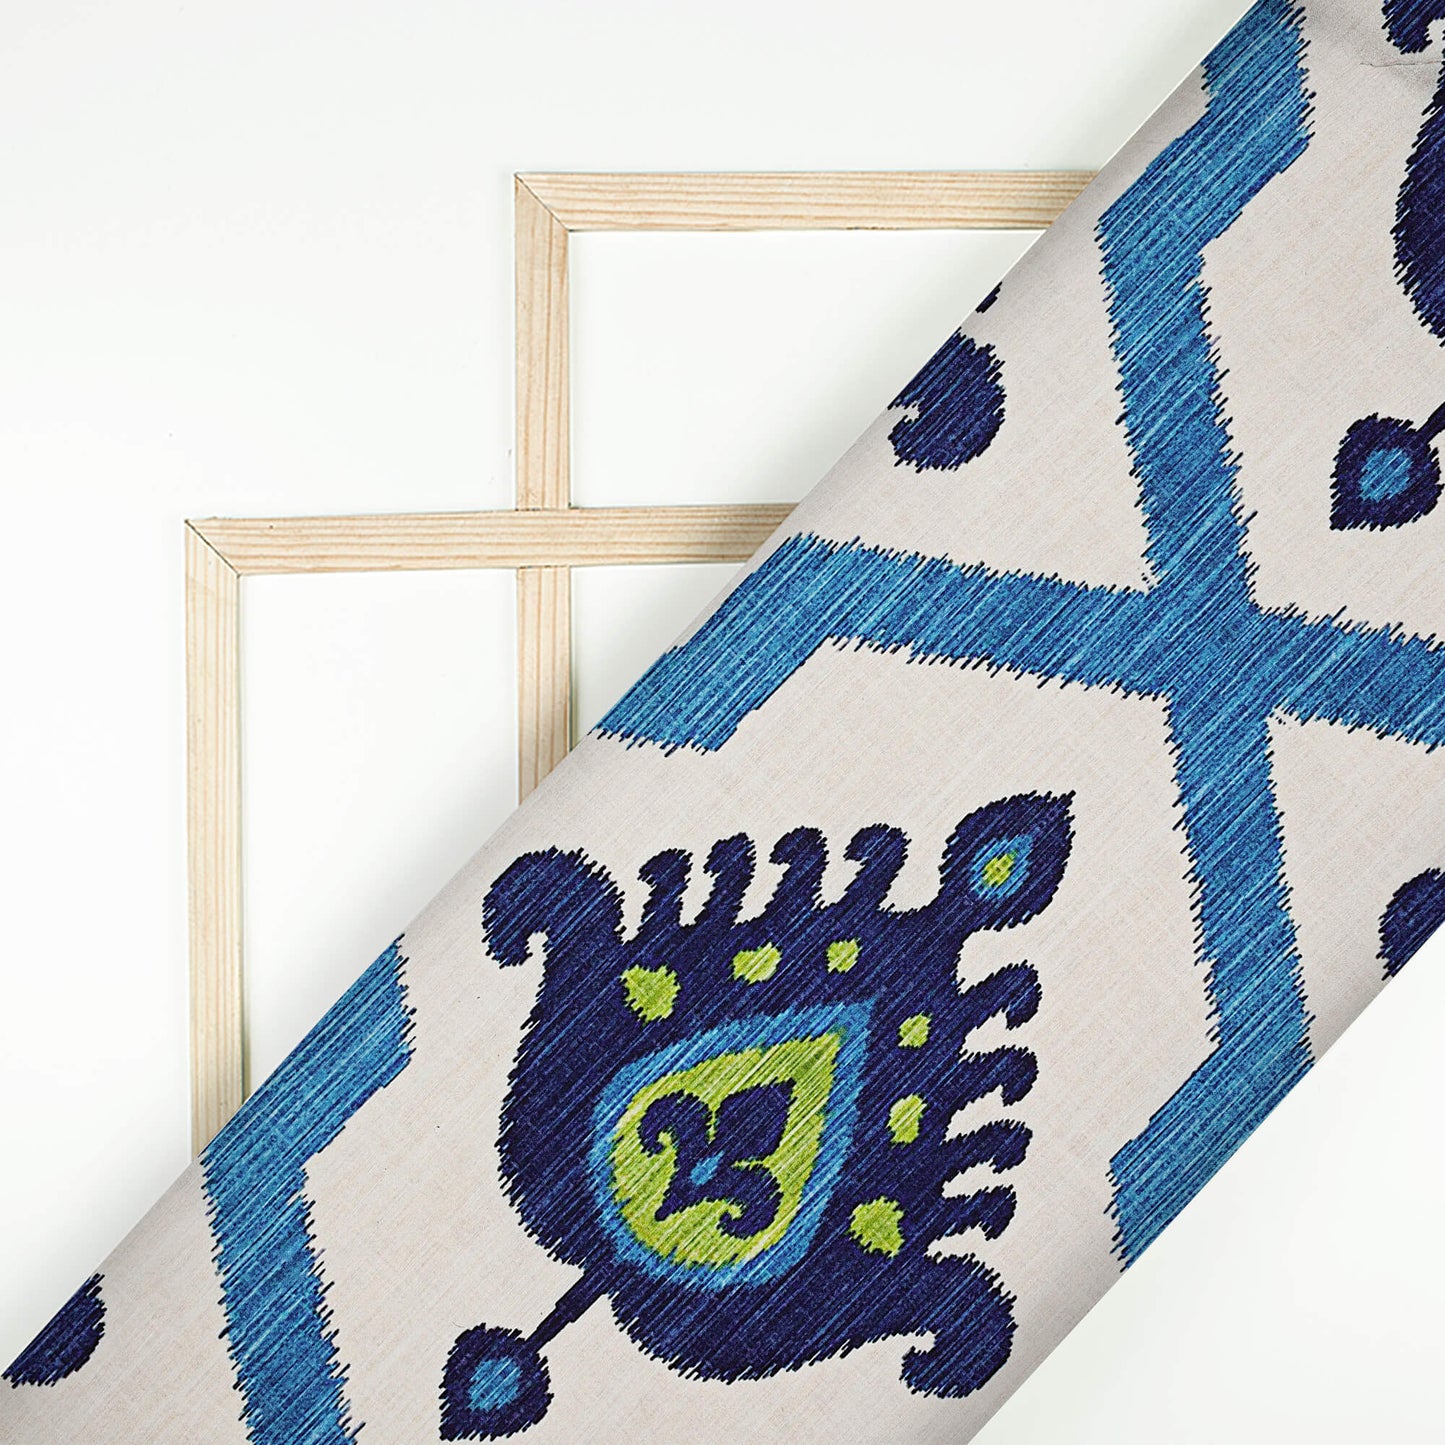 Blue Ethnic Digital Print Muslin Fabric